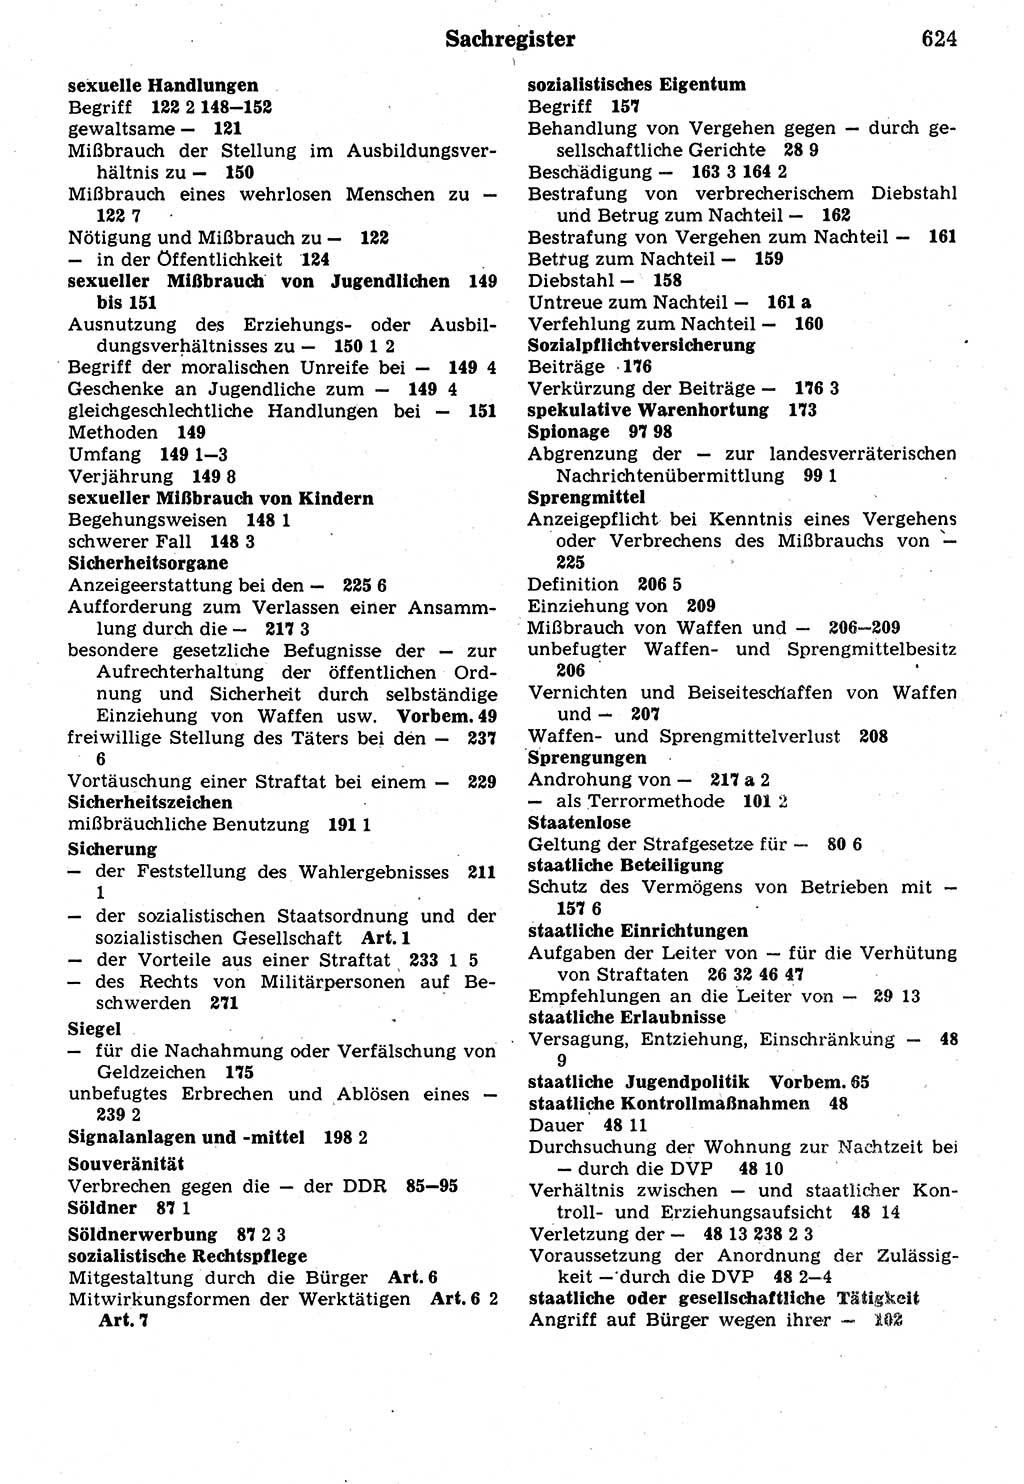 Strafrecht der Deutschen Demokratischen Republik (DDR), Kommentar zum Strafgesetzbuch (StGB) 1987, Seite 624 (Strafr. DDR Komm. StGB 1987, S. 624)